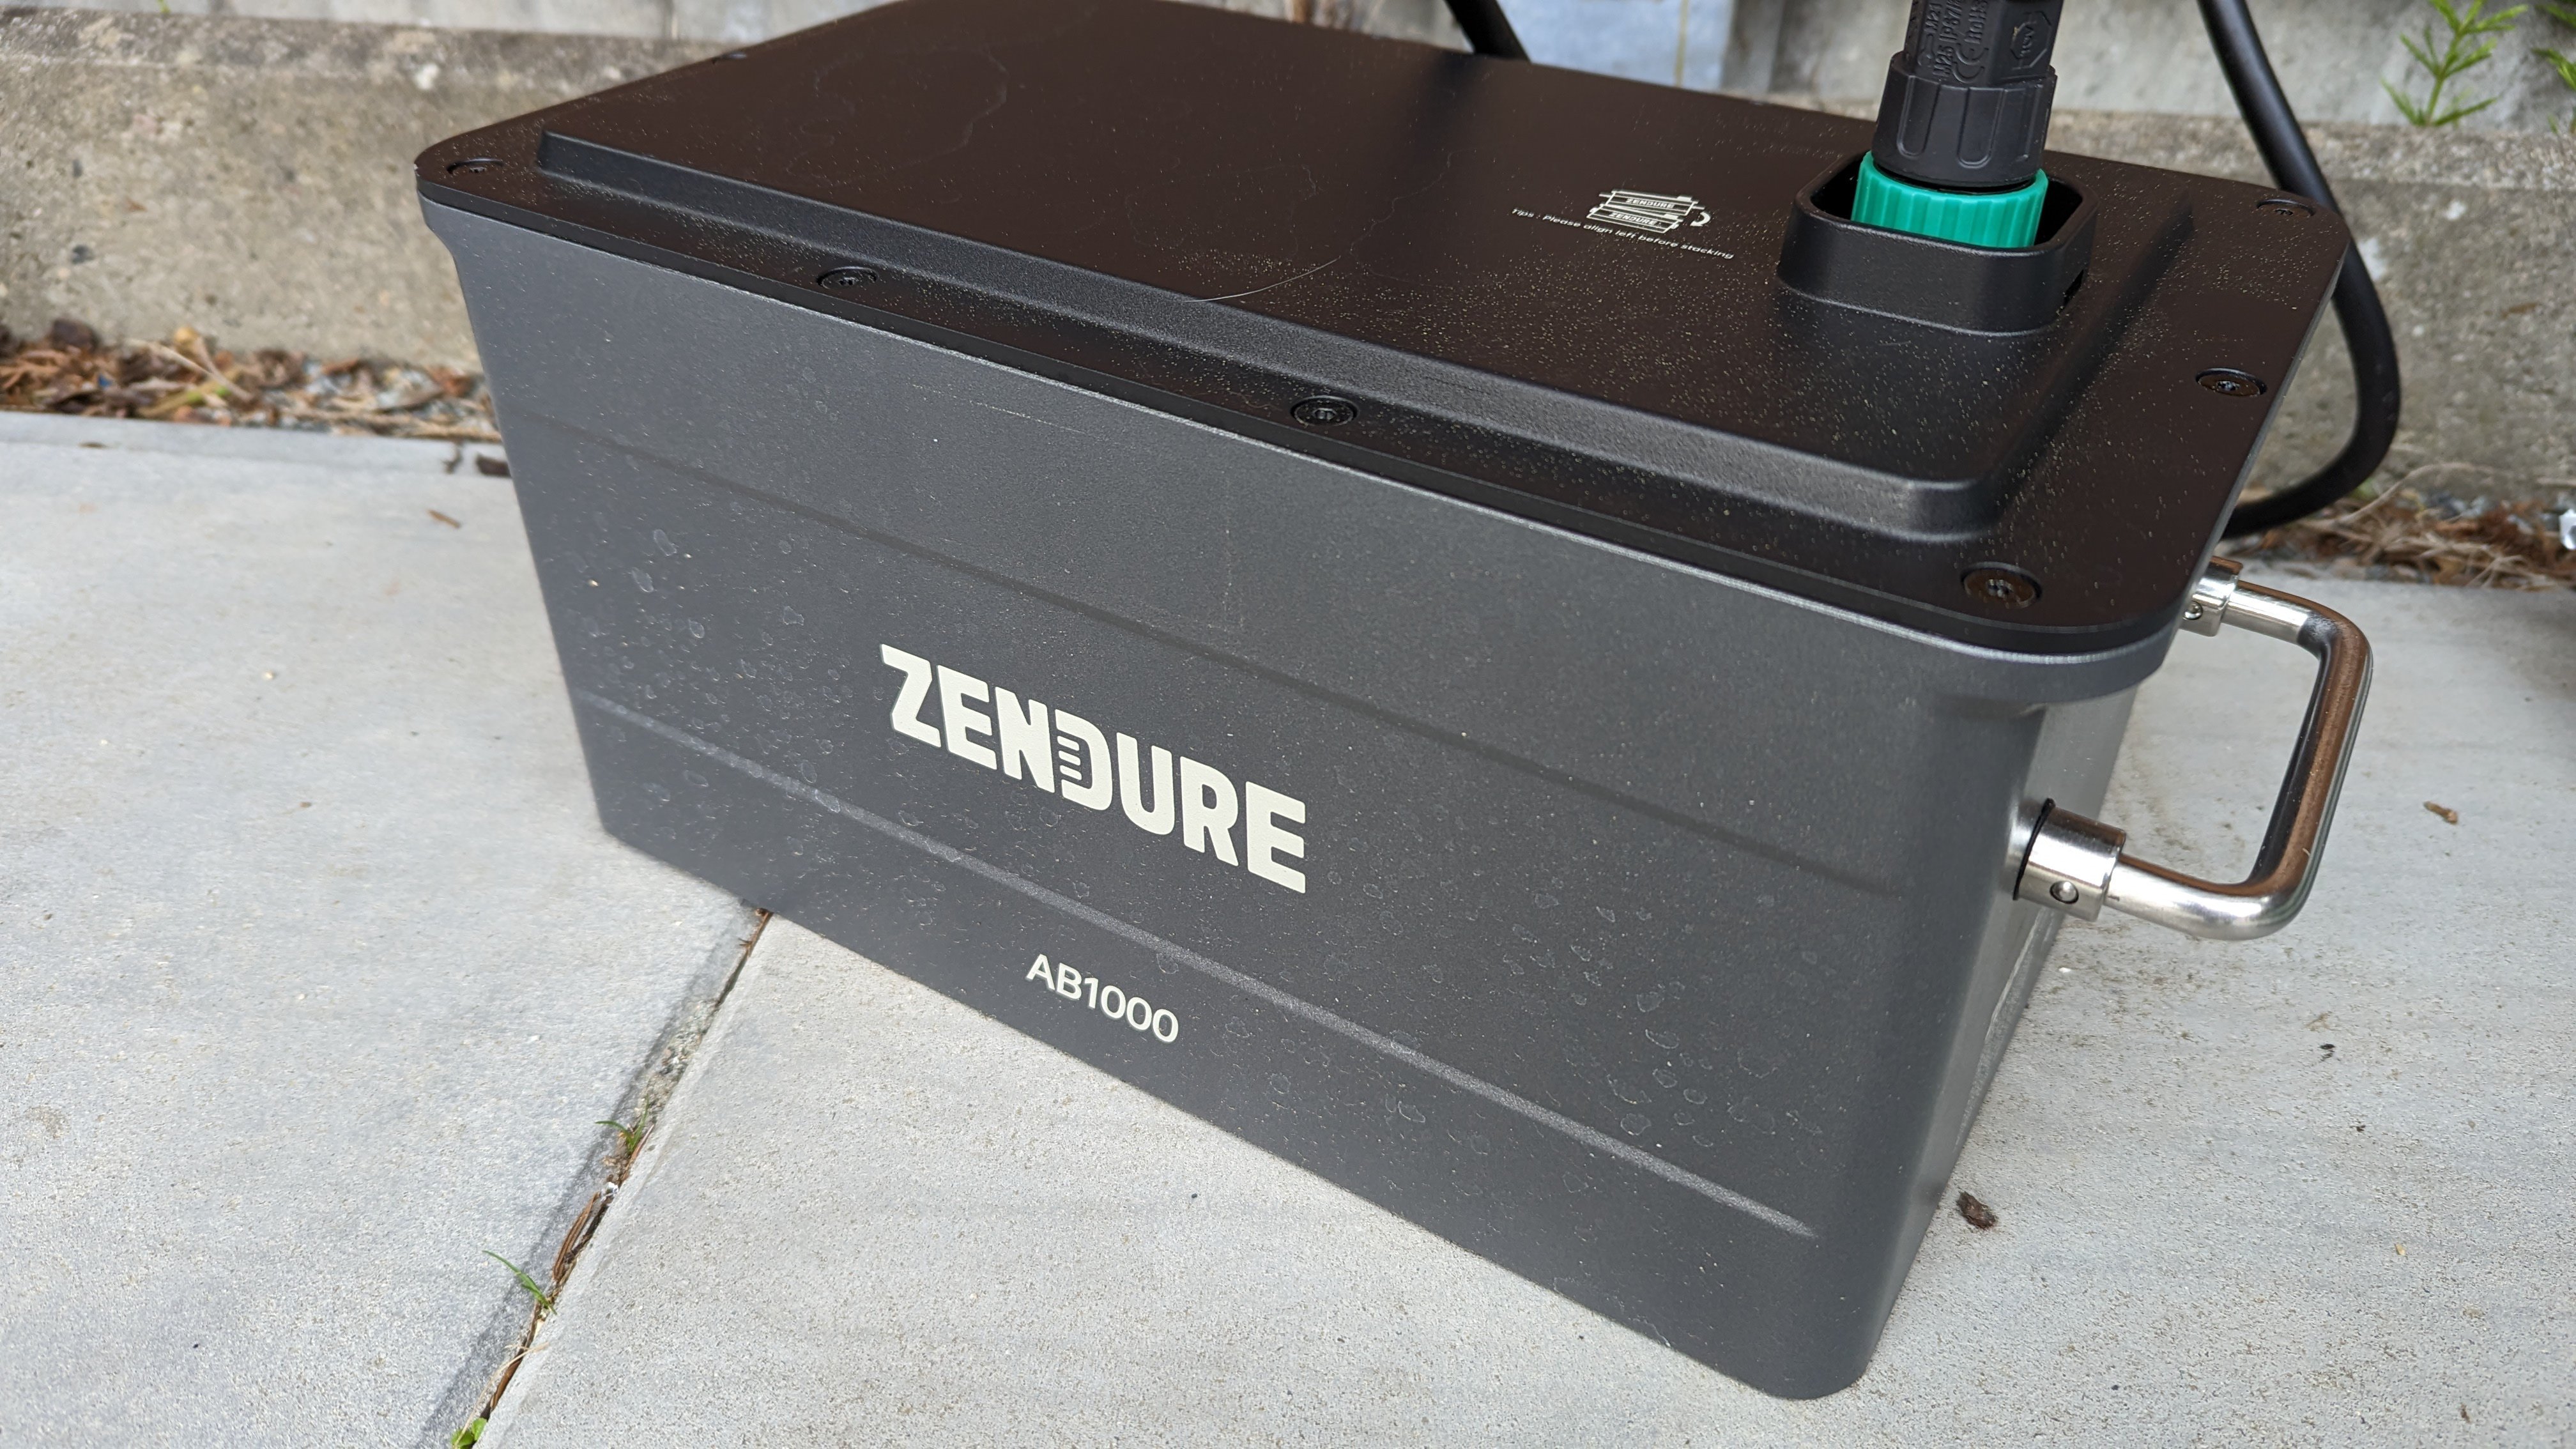 Zendure SolarFlow im Test – Hartware